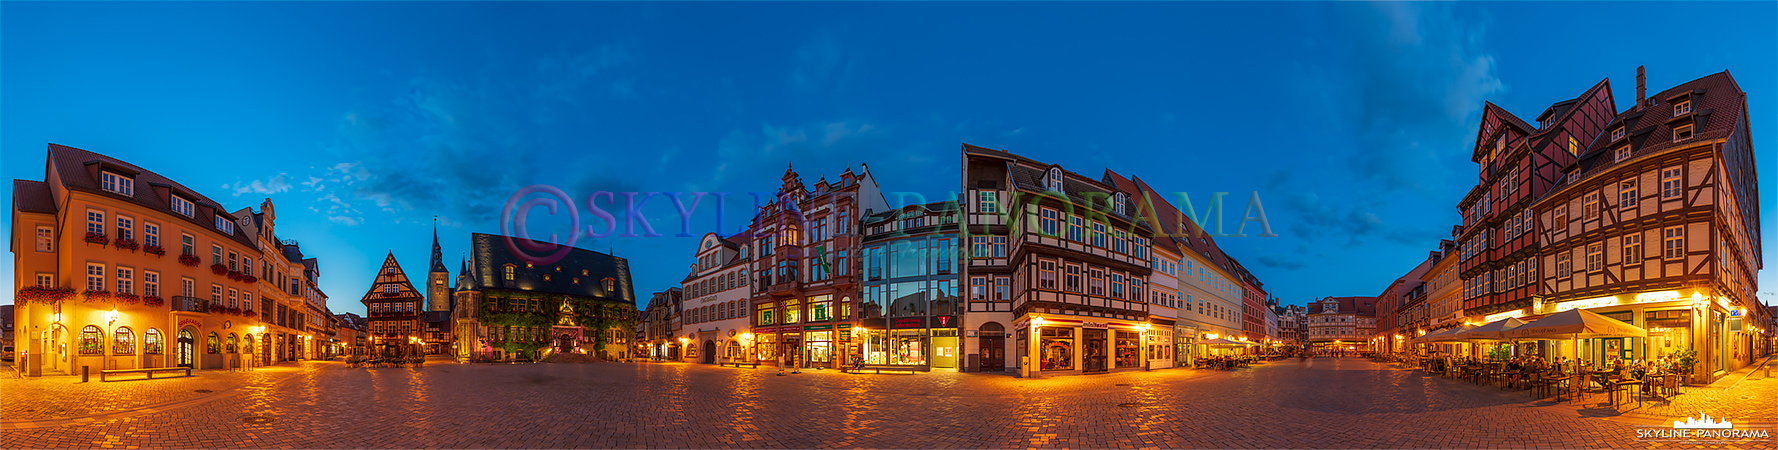 Marktplatz von Quedlinburg am Abend (p_01090)